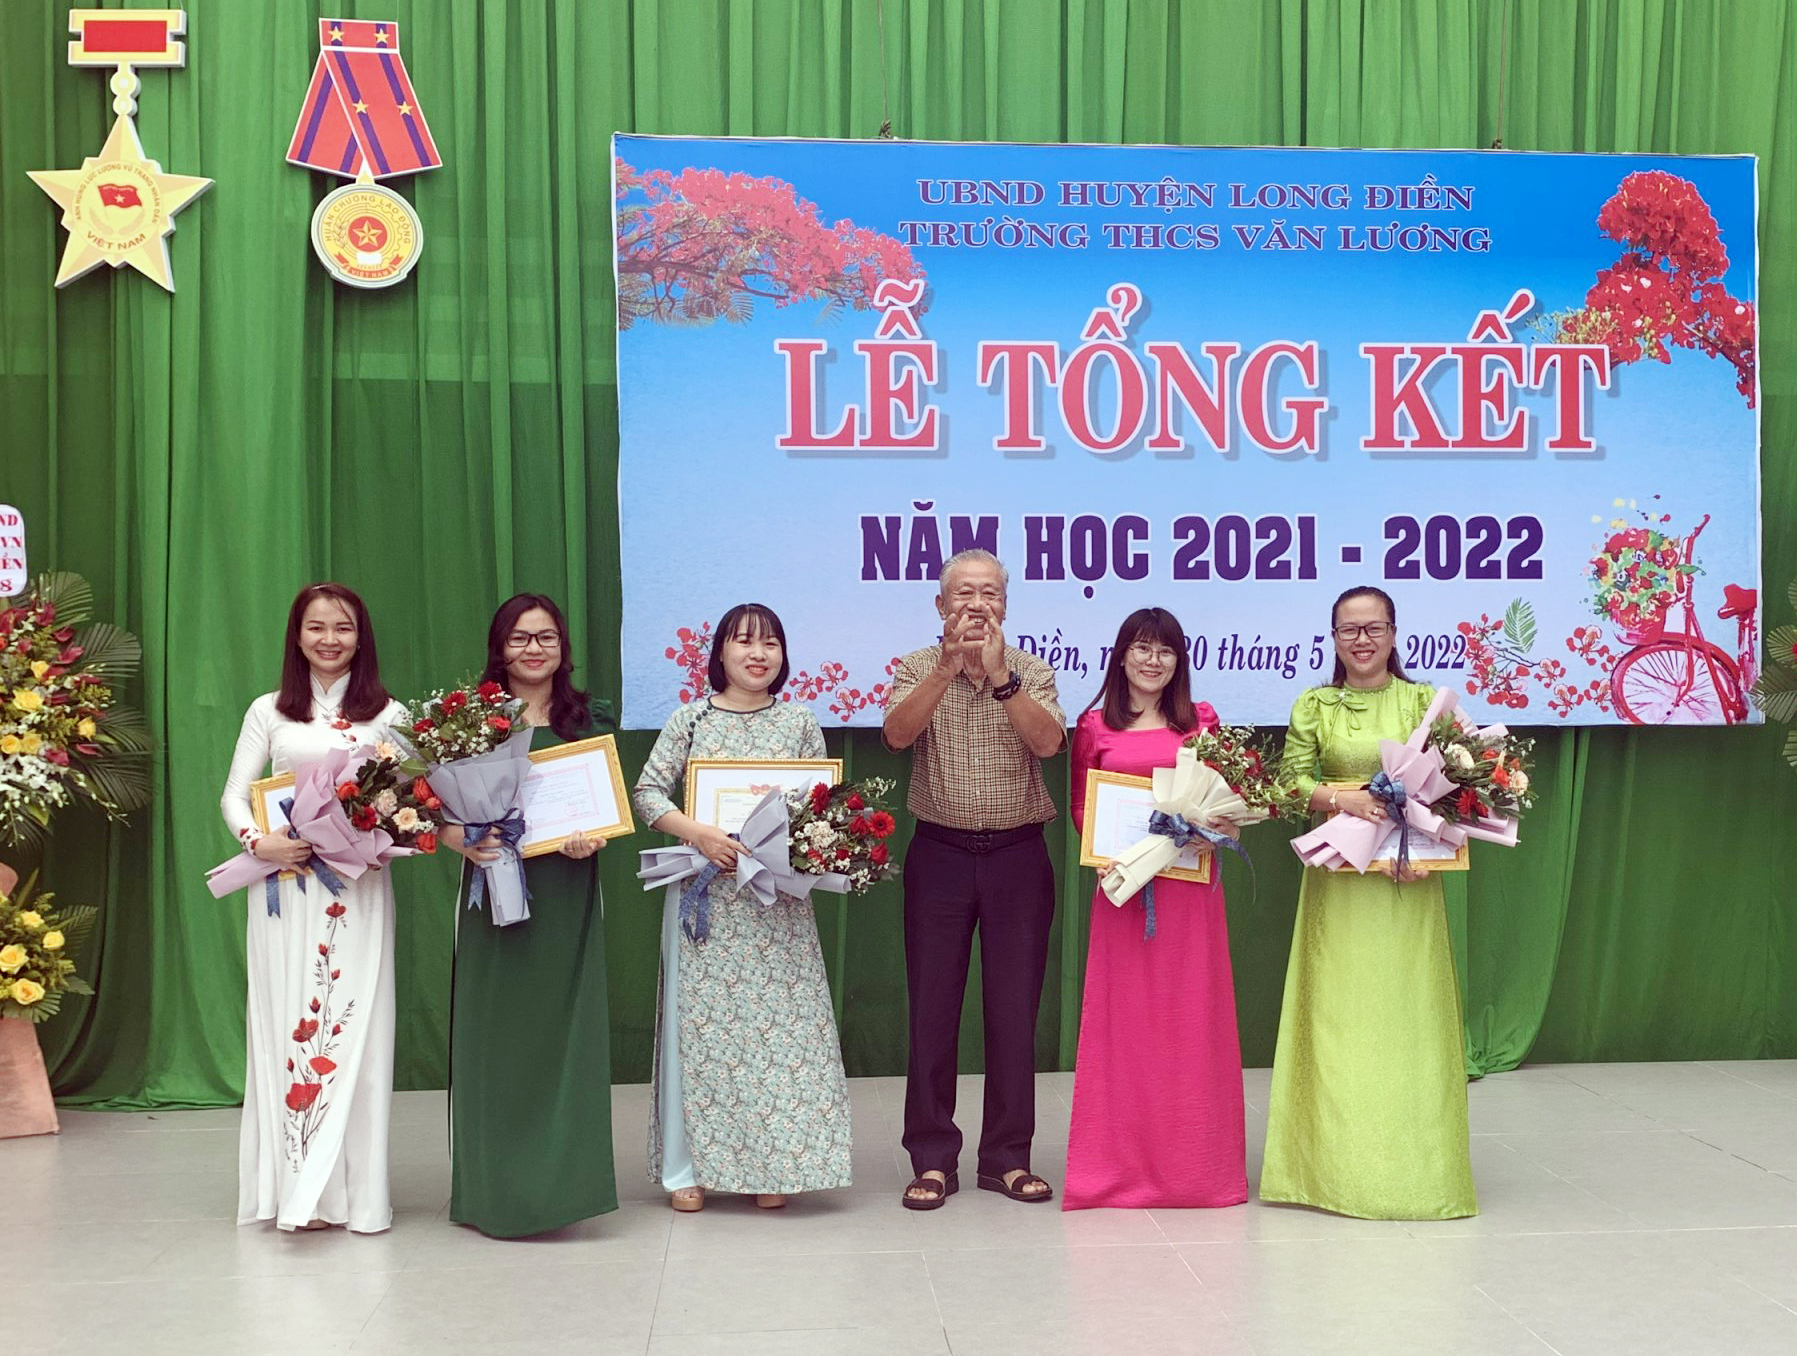 Ông Trần Văn Khánh, nguyên Bí thư Tỉnh ủy, cựu học sinh Trường THCS Văn Lương trao Giấy khen cho giáo viên đạt danh hiệu giáo viên chủ nhiệm và tổng phụ trách giỏi cấp huyện.